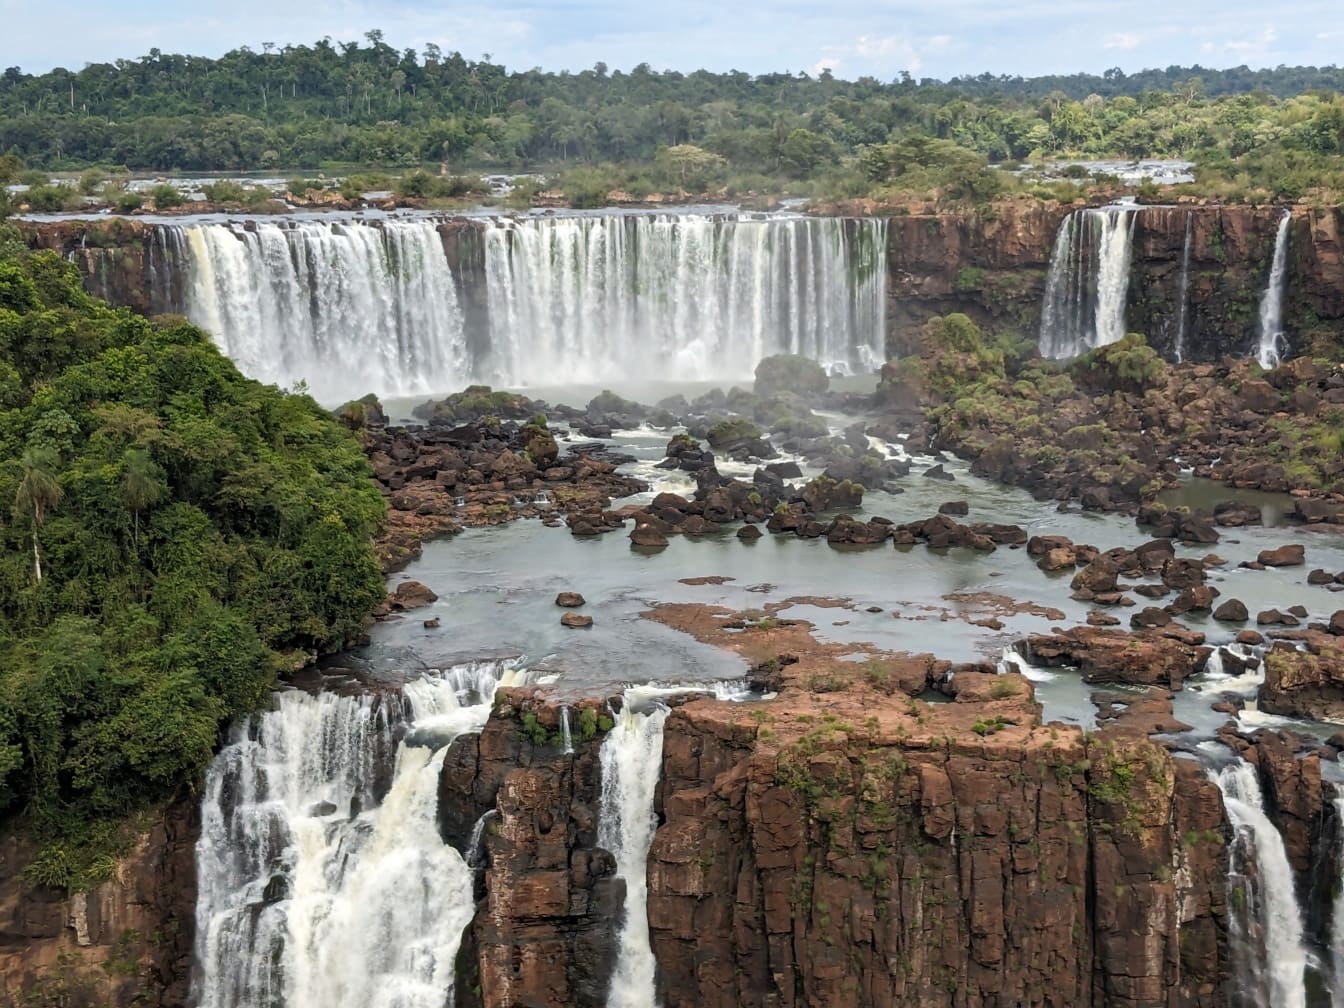 Storslået panorama over den brasilianske side af vandfaldet på Iguazu-floden, uberørt vildmark i sin skønhed